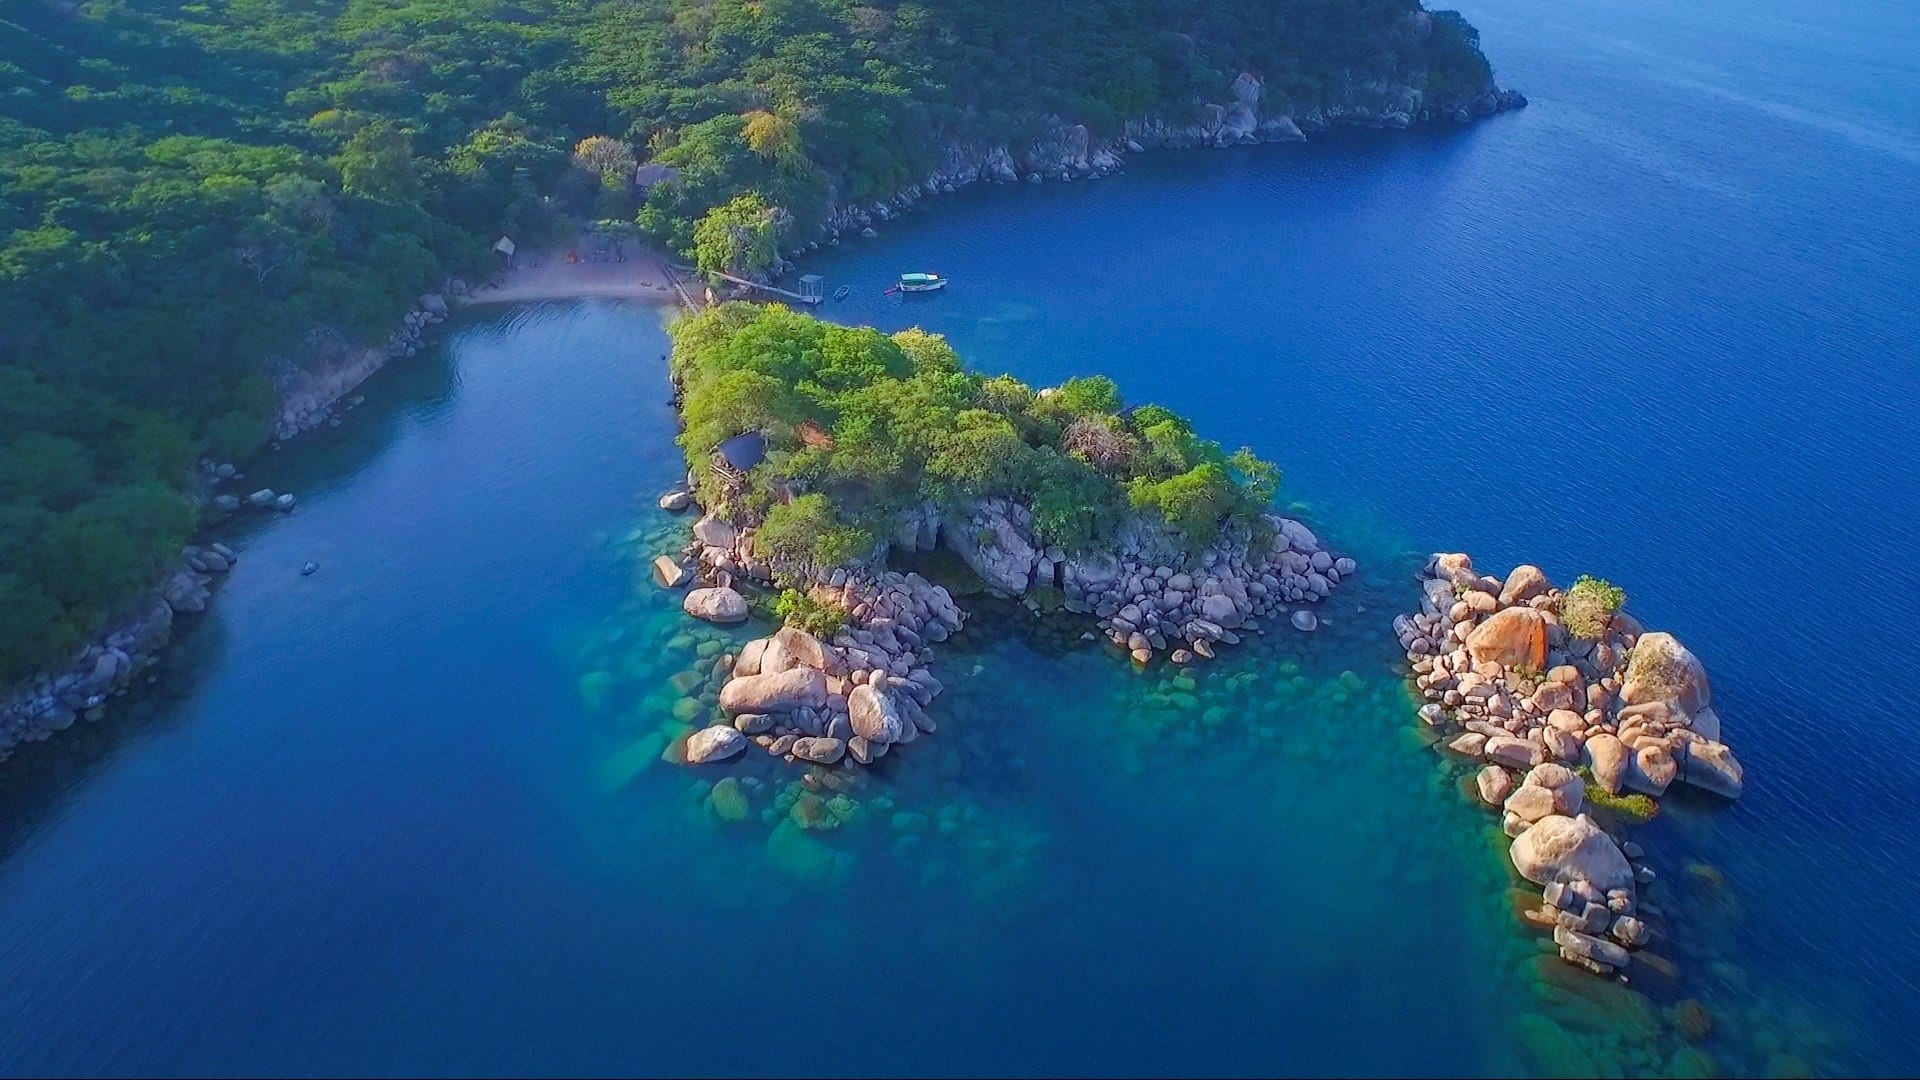 Mumbo Island guide, Malawi dream, Nature's retreat, Serene escape, 1920x1080 Full HD Desktop